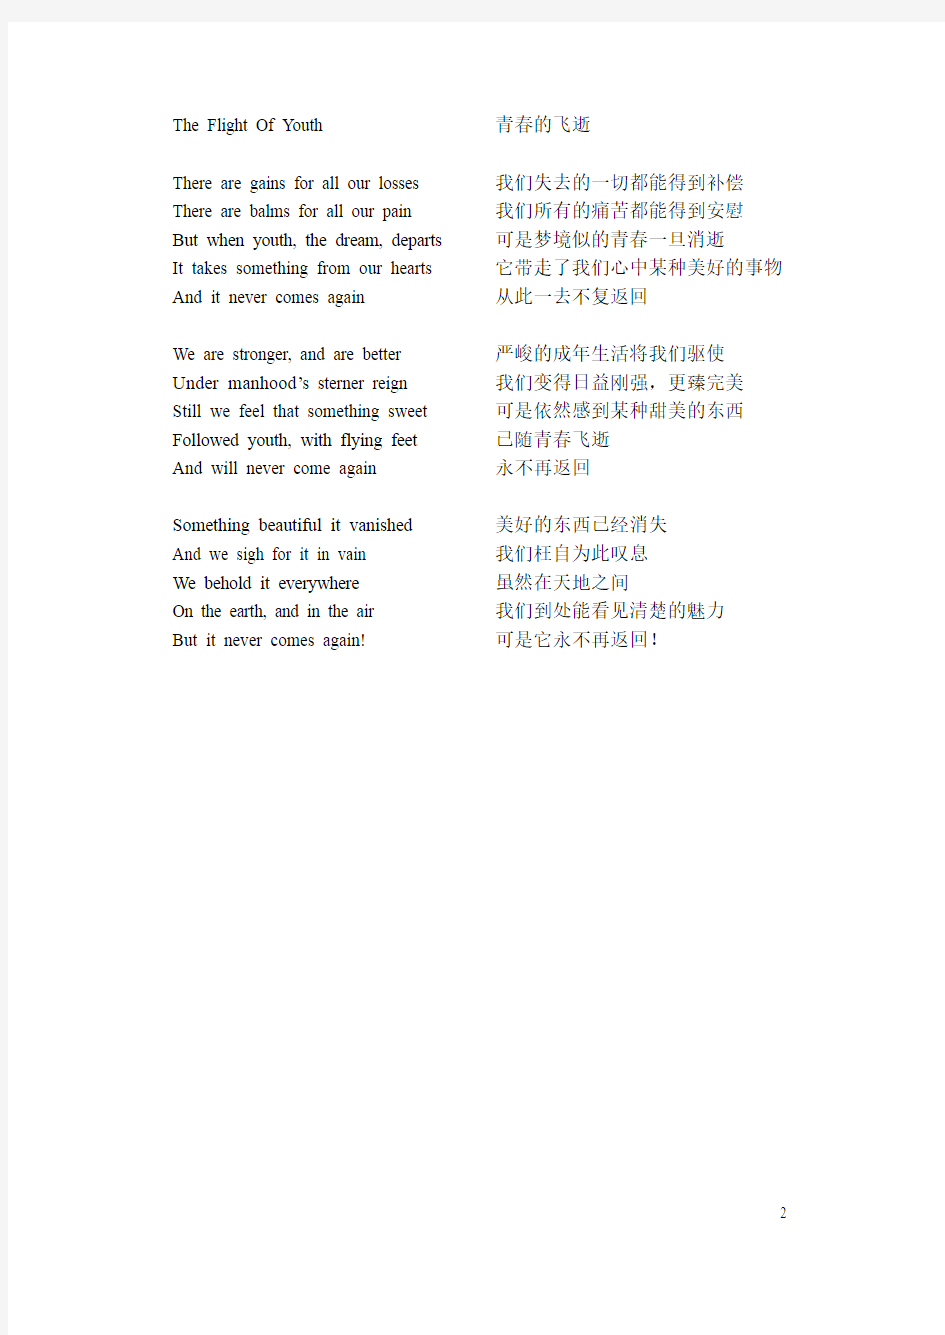 几首美丽的英文诗歌,有汉语翻译